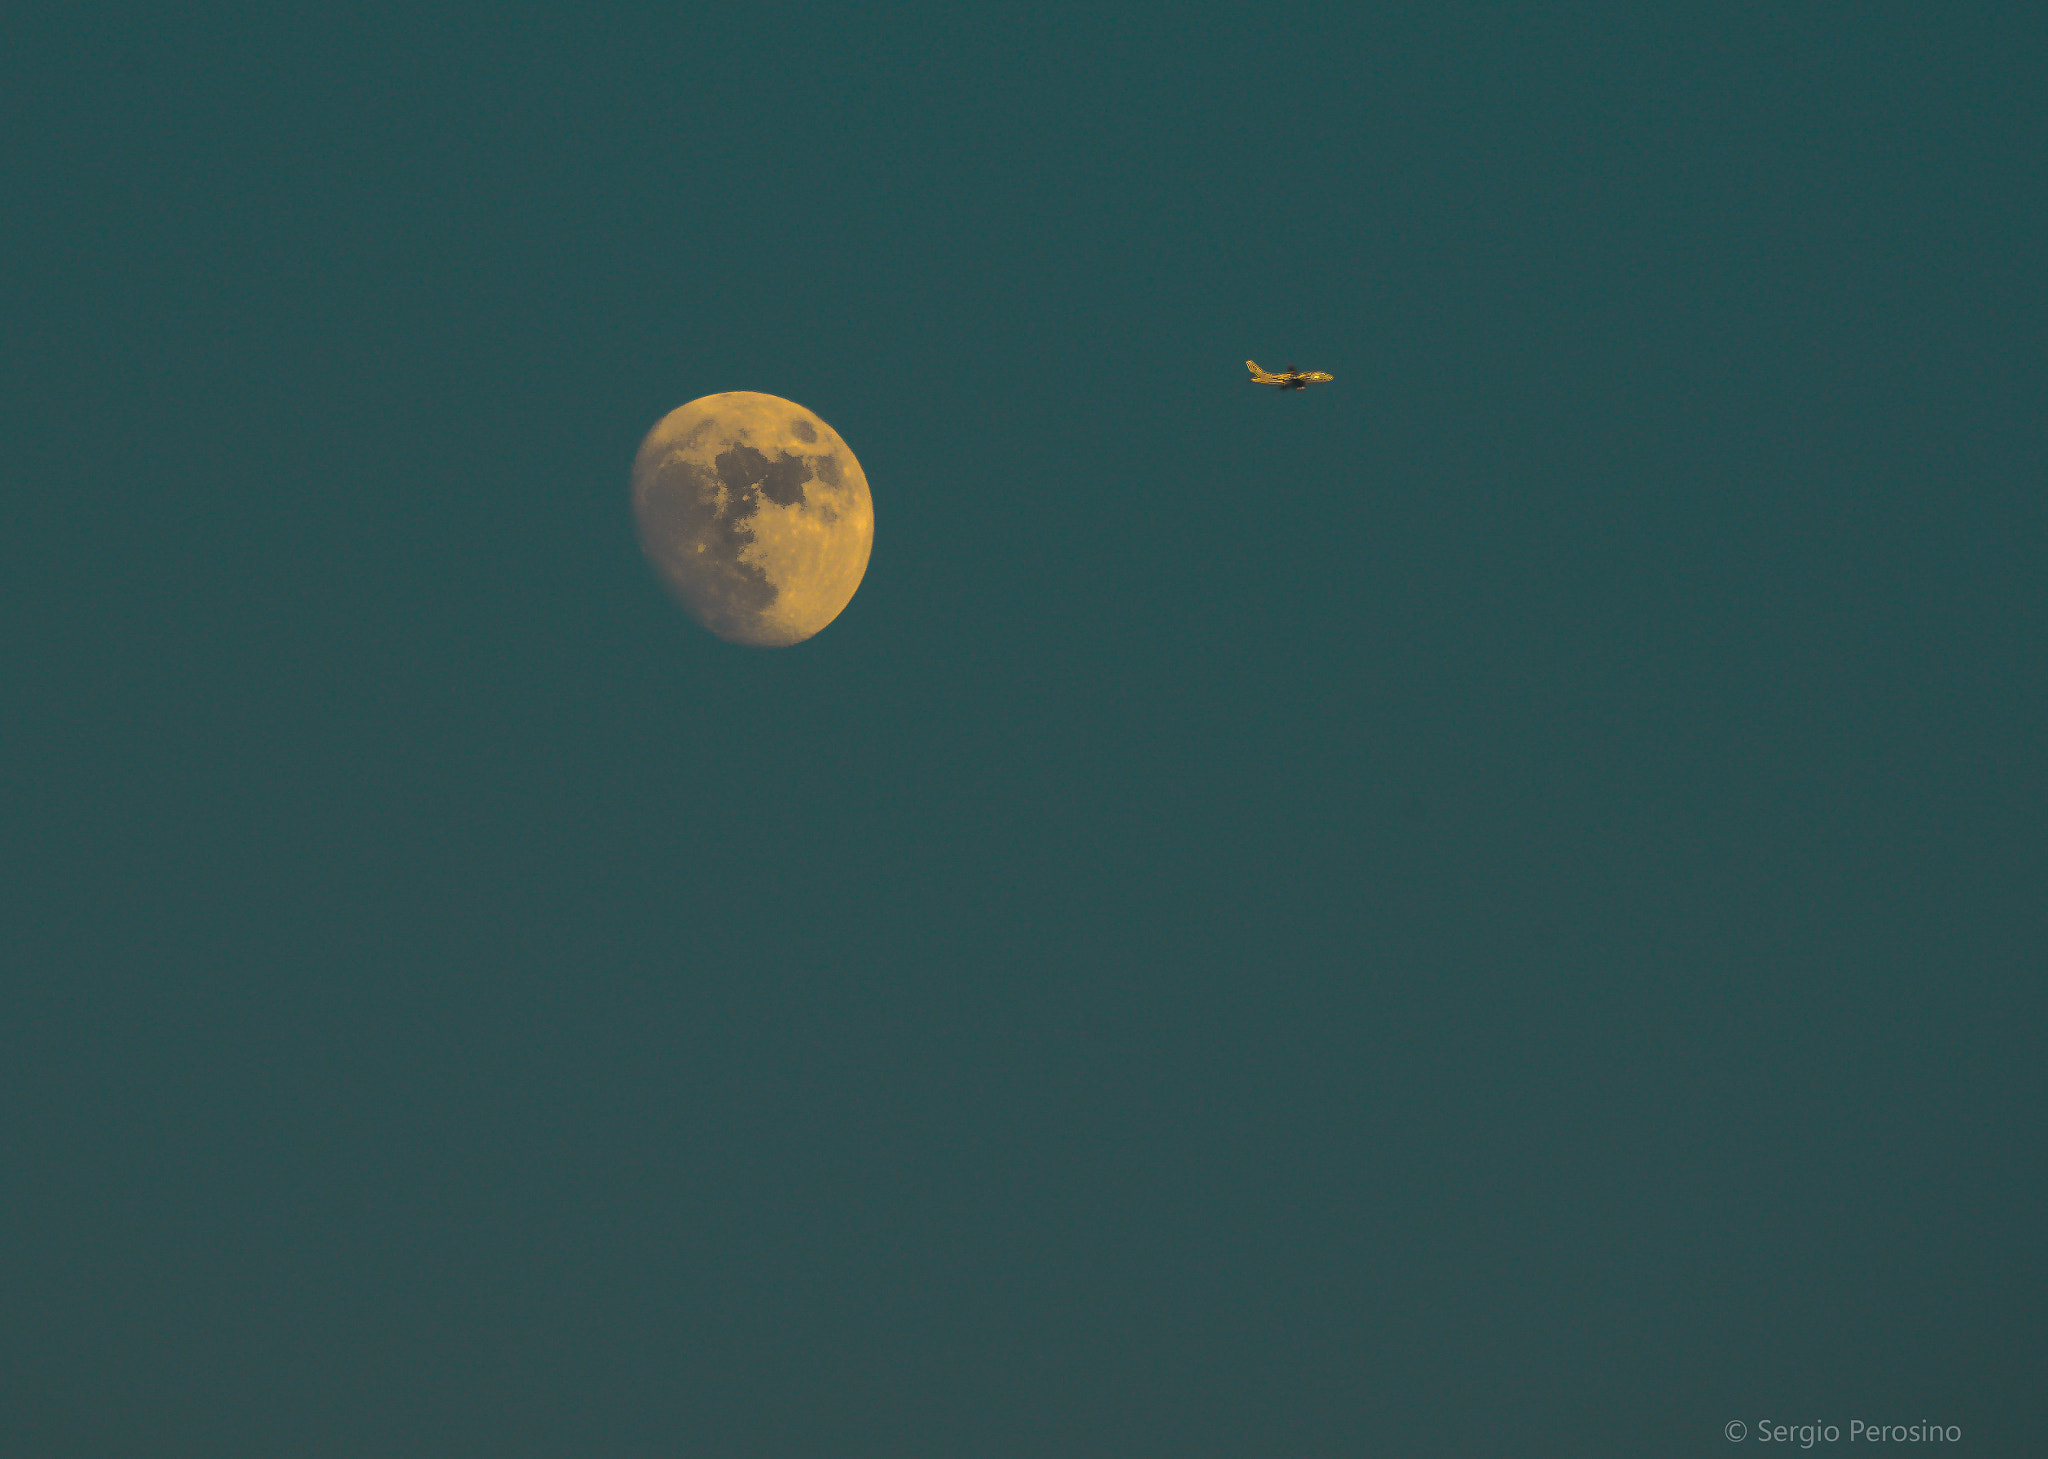 Nikon D800 sample photo. Moon and aircraft. photography